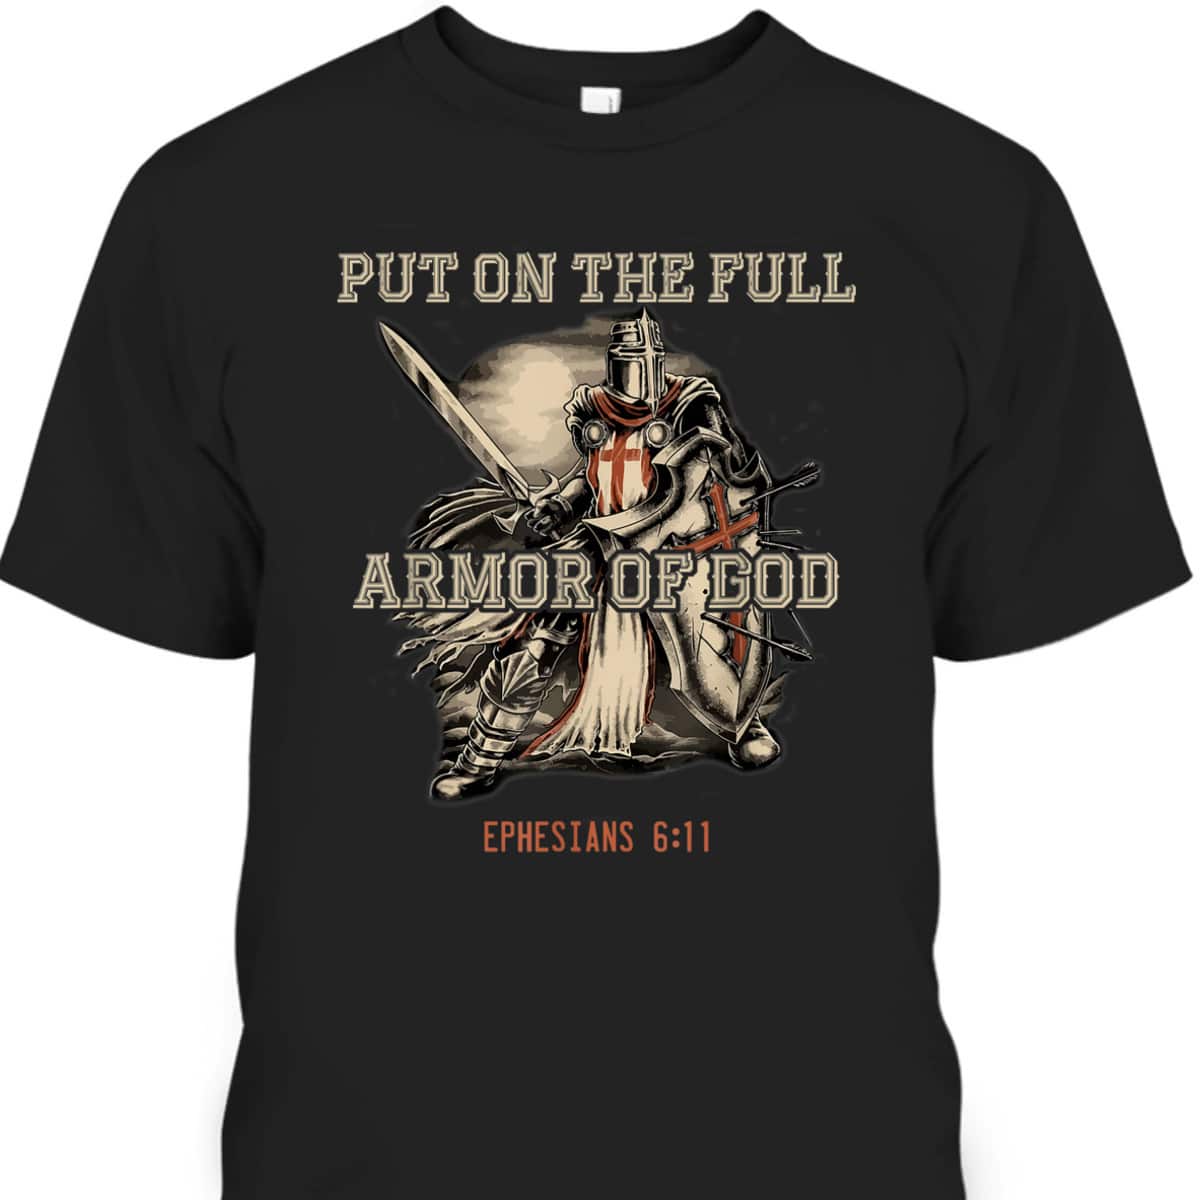 Put On The Full Armor Of God T-Shirt Christian Religious Gift